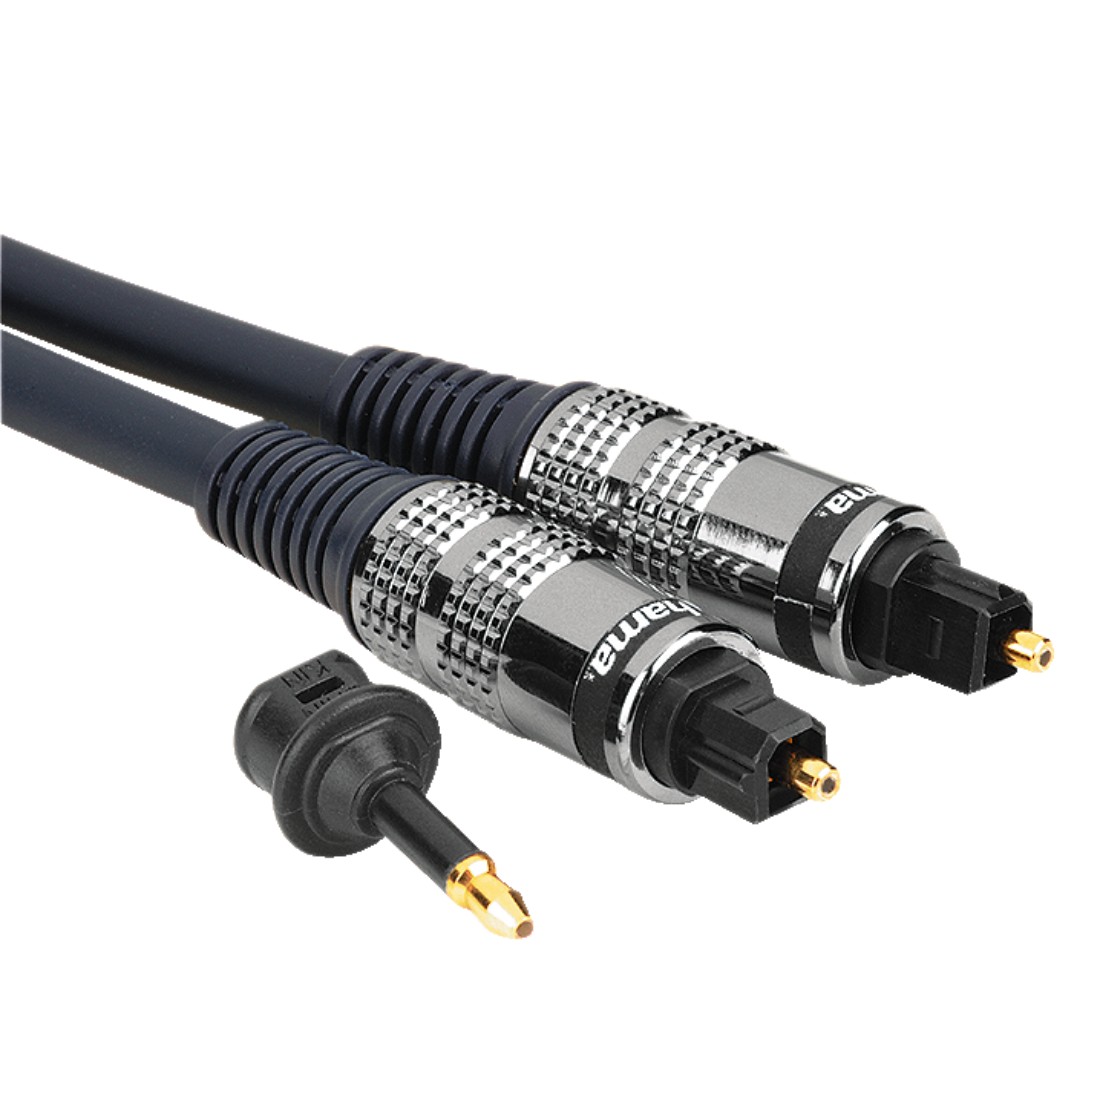 Odt toslink. SPDIF оптический кабель 3.5 RCA. 3.5 Мм к RCA SPDIF коаксиальный цифровой аудиокабель. Разъем s/PDIF коаксиальный. Oehlbach Toslink Digital Optical Cable 217.